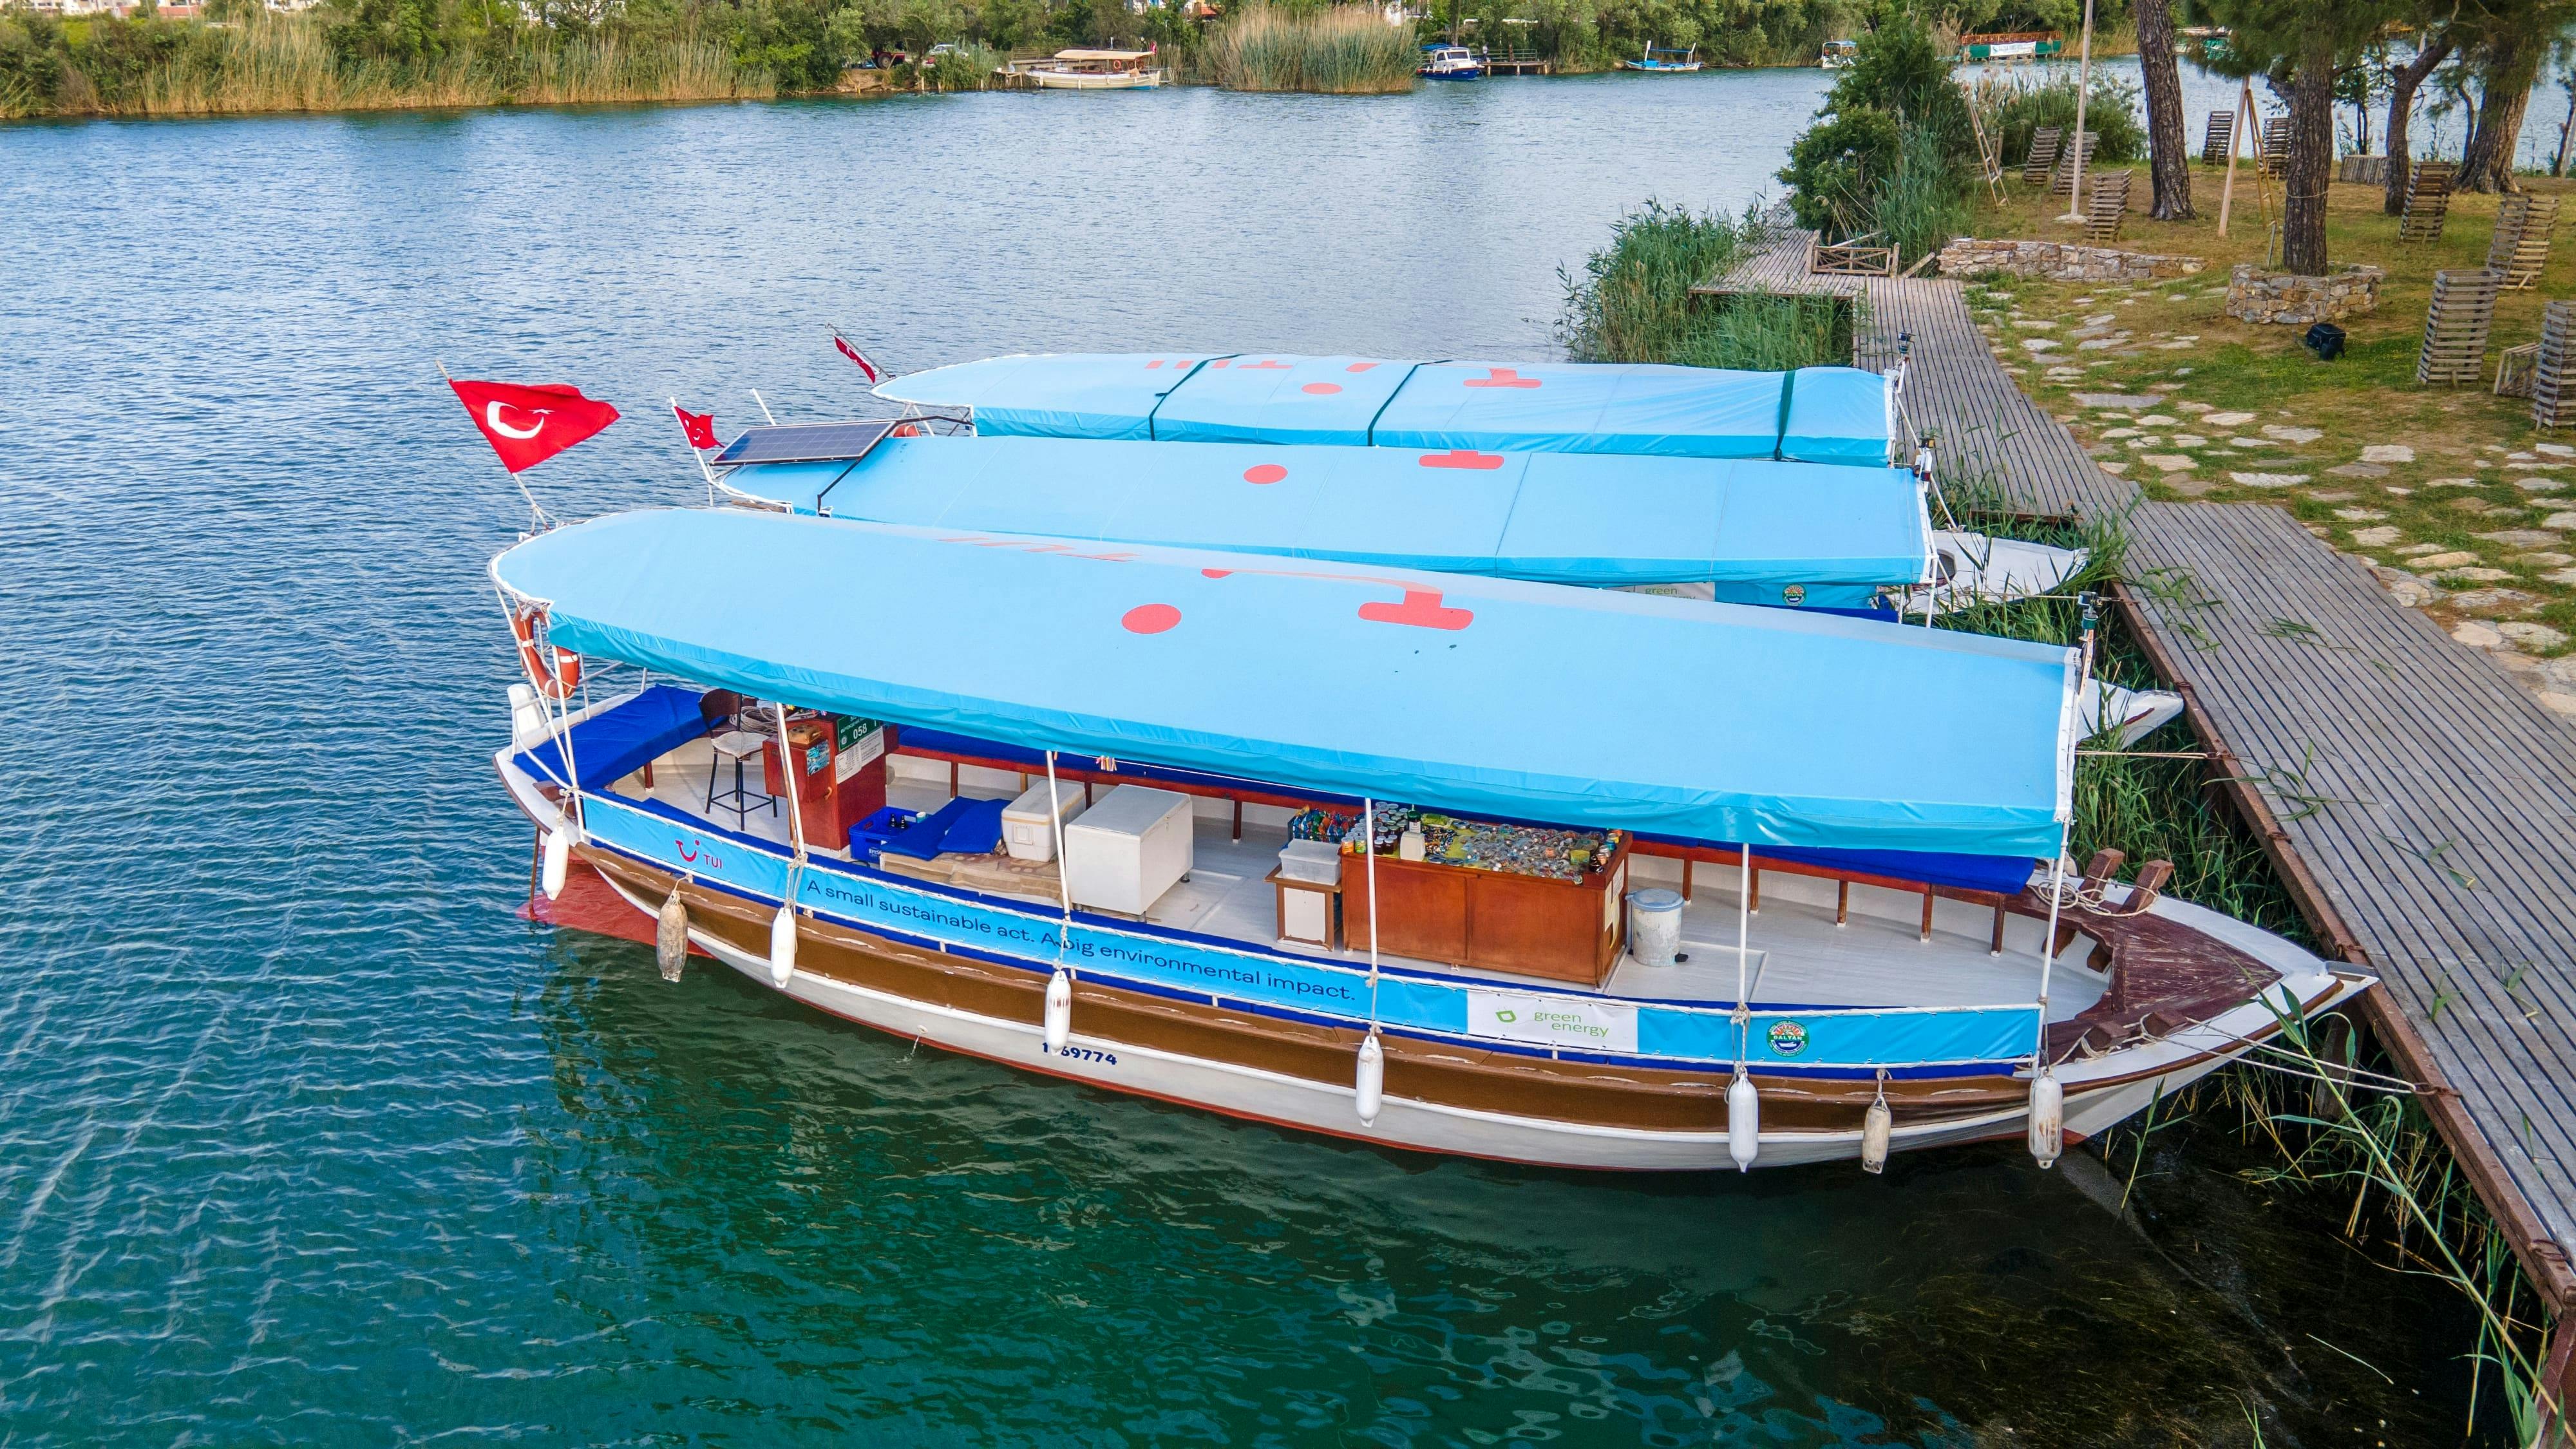 Dalyan Tour & River Boat Cruise